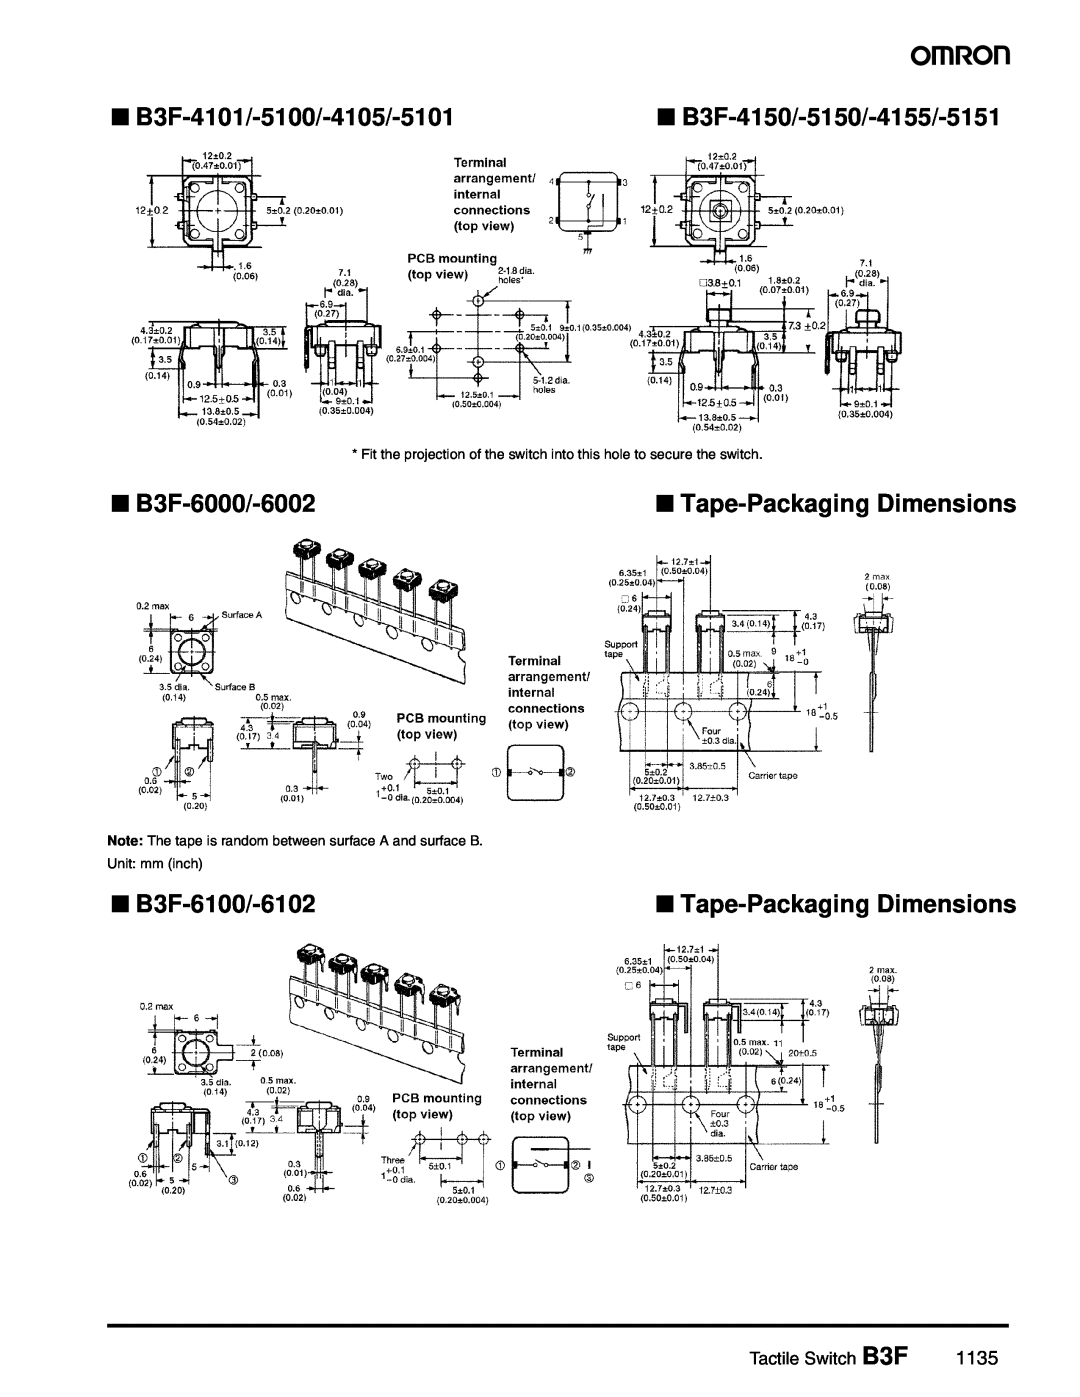 Omron B3F-4101/-5100/-4105/-5101, B3F-6000/-6002, B3F-6100/-6102, B3F-4150/-5150/-4155/-5151, Tape-Packaging Dimensions 